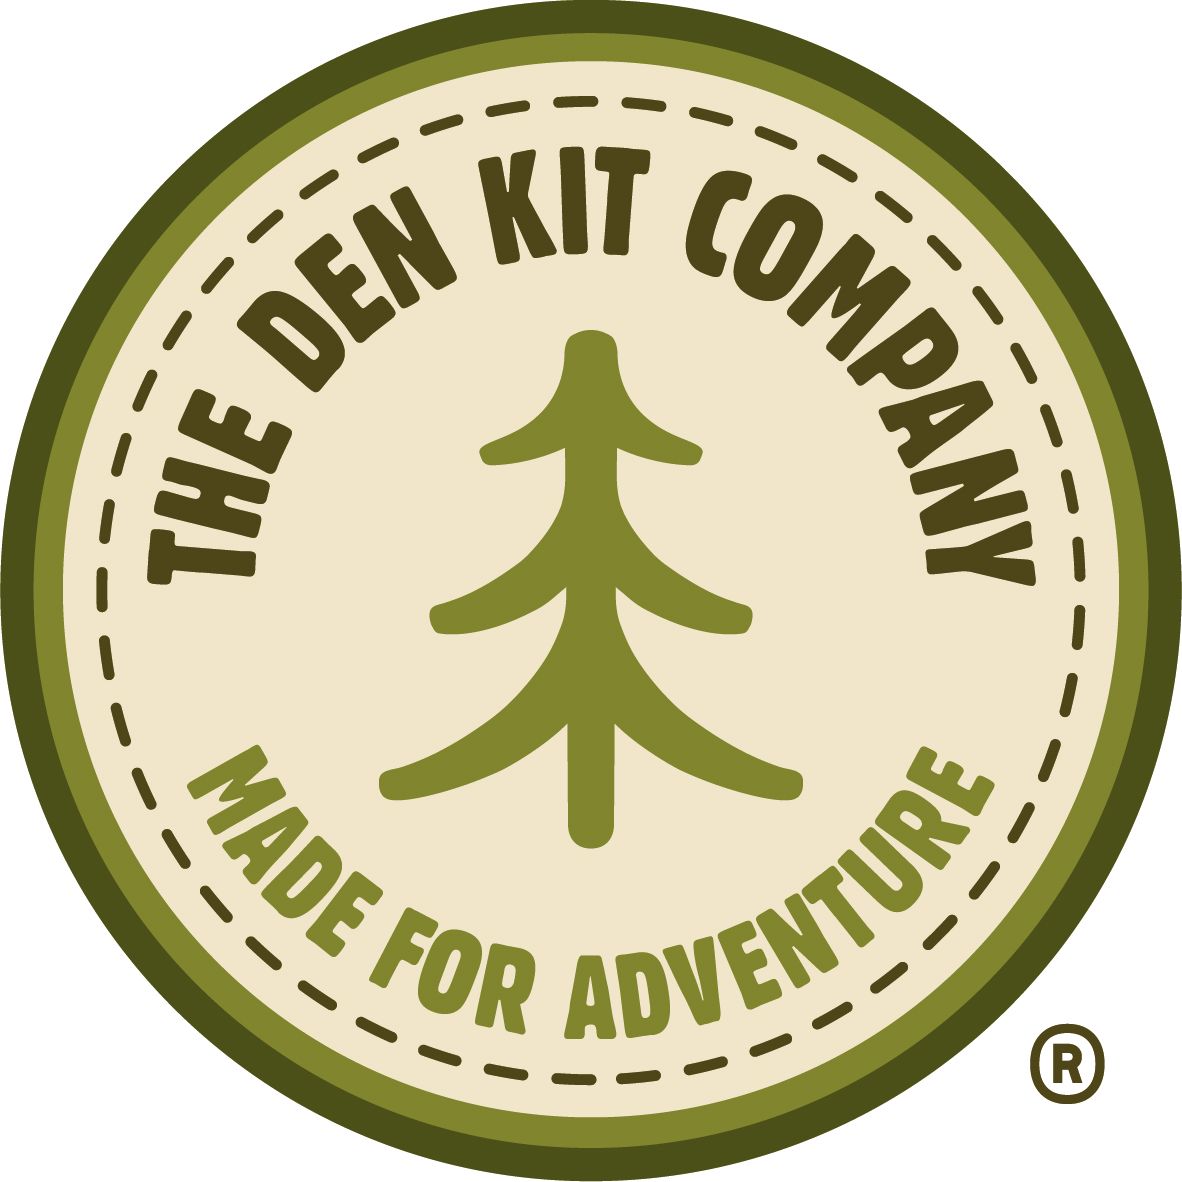 The Den Kit Co